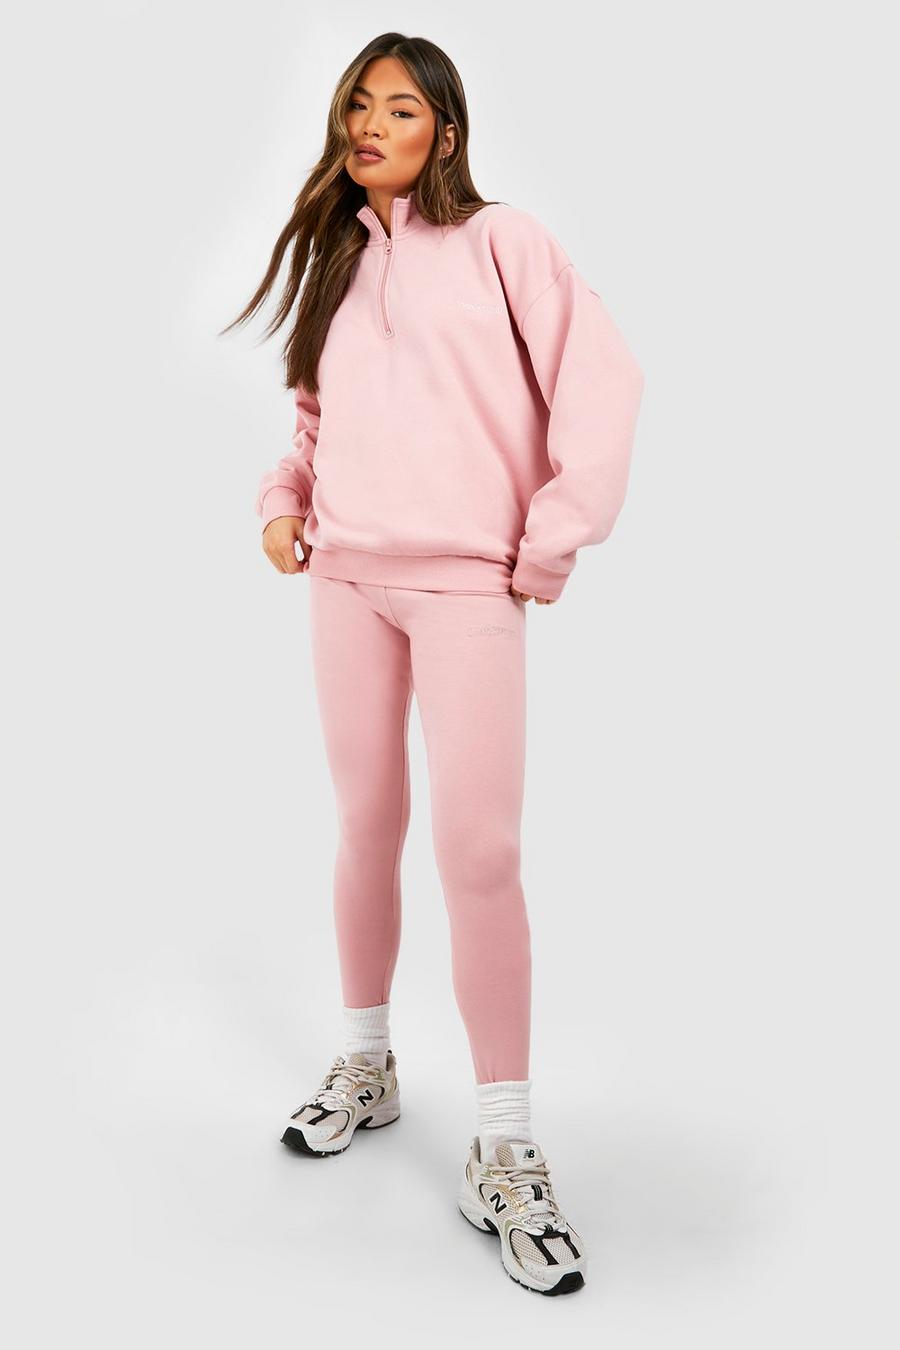 Dusty pink DSGN Studio Half Zip Sweatshirt And Legging Set image number 1